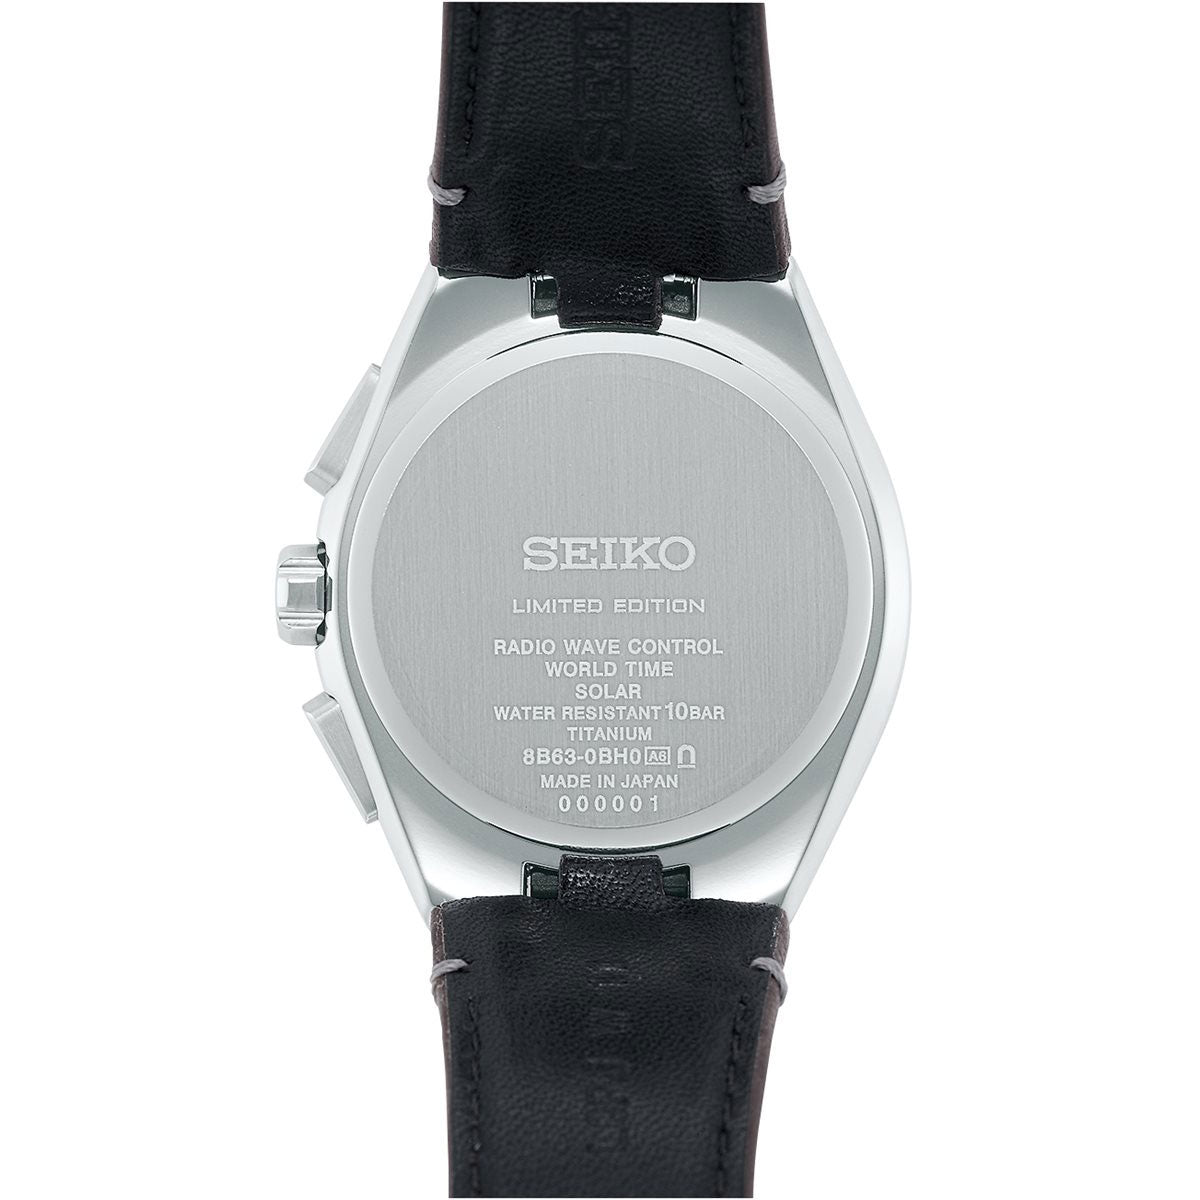 セイコー アストロン ネクスター SBXY069 セイコー腕時計110周年 限定 メンズ 腕時計 ソーラー電波ライン SEIKO ASTRON NEXTER チタン